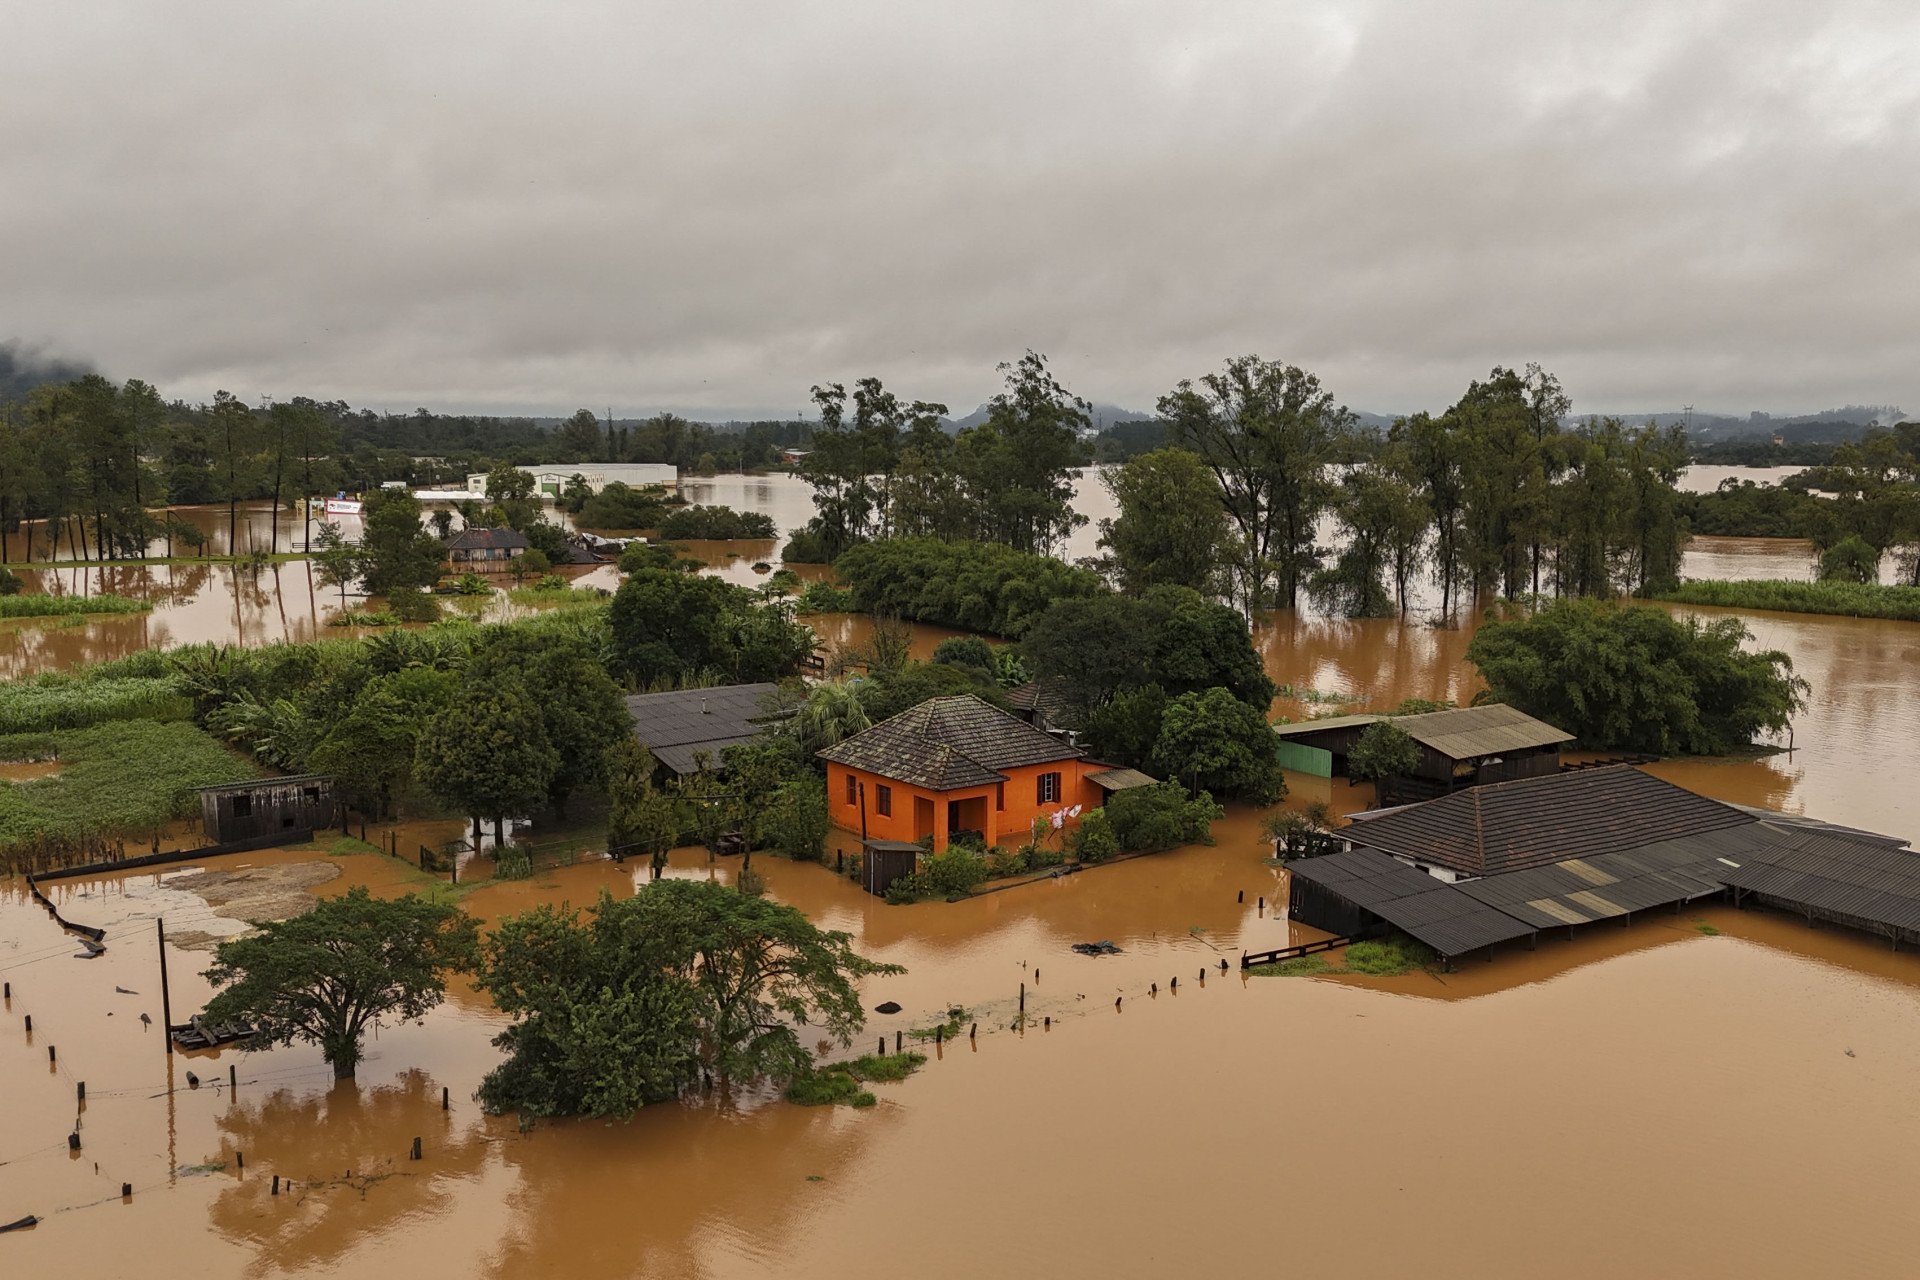 Registros do Rio Grande do Sul após série de chuvas e enchentes na região gaúcha (Foto: Anselmo Cunha/AFP)